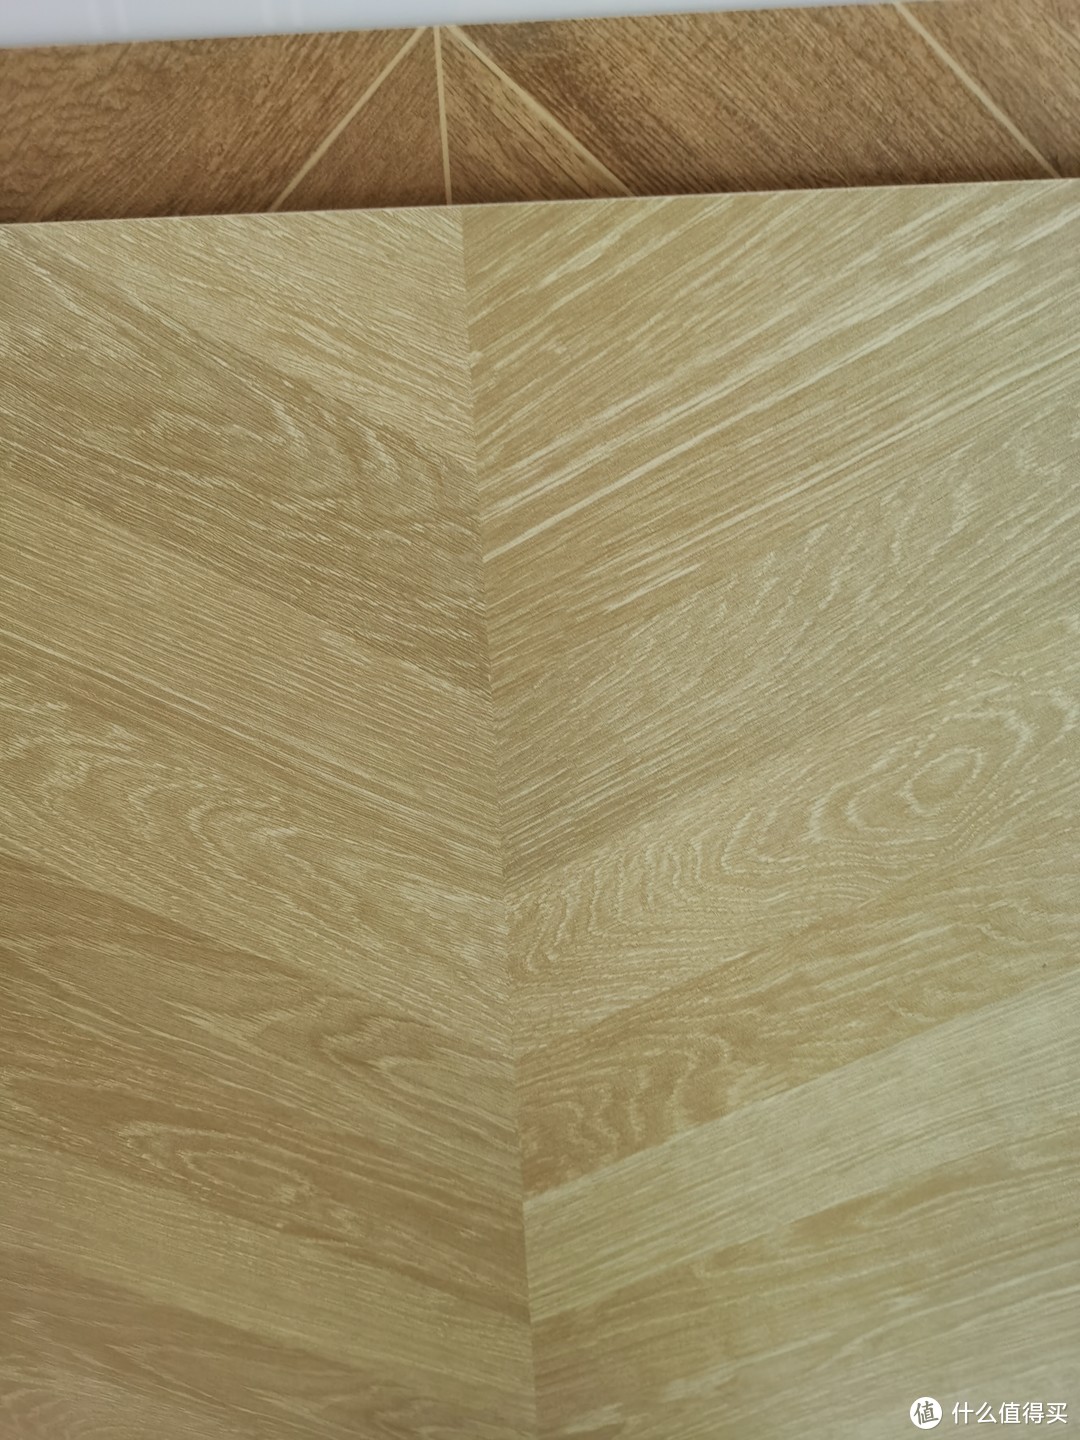 木纹、木花色砖面(二)&顺带简述对比木地板